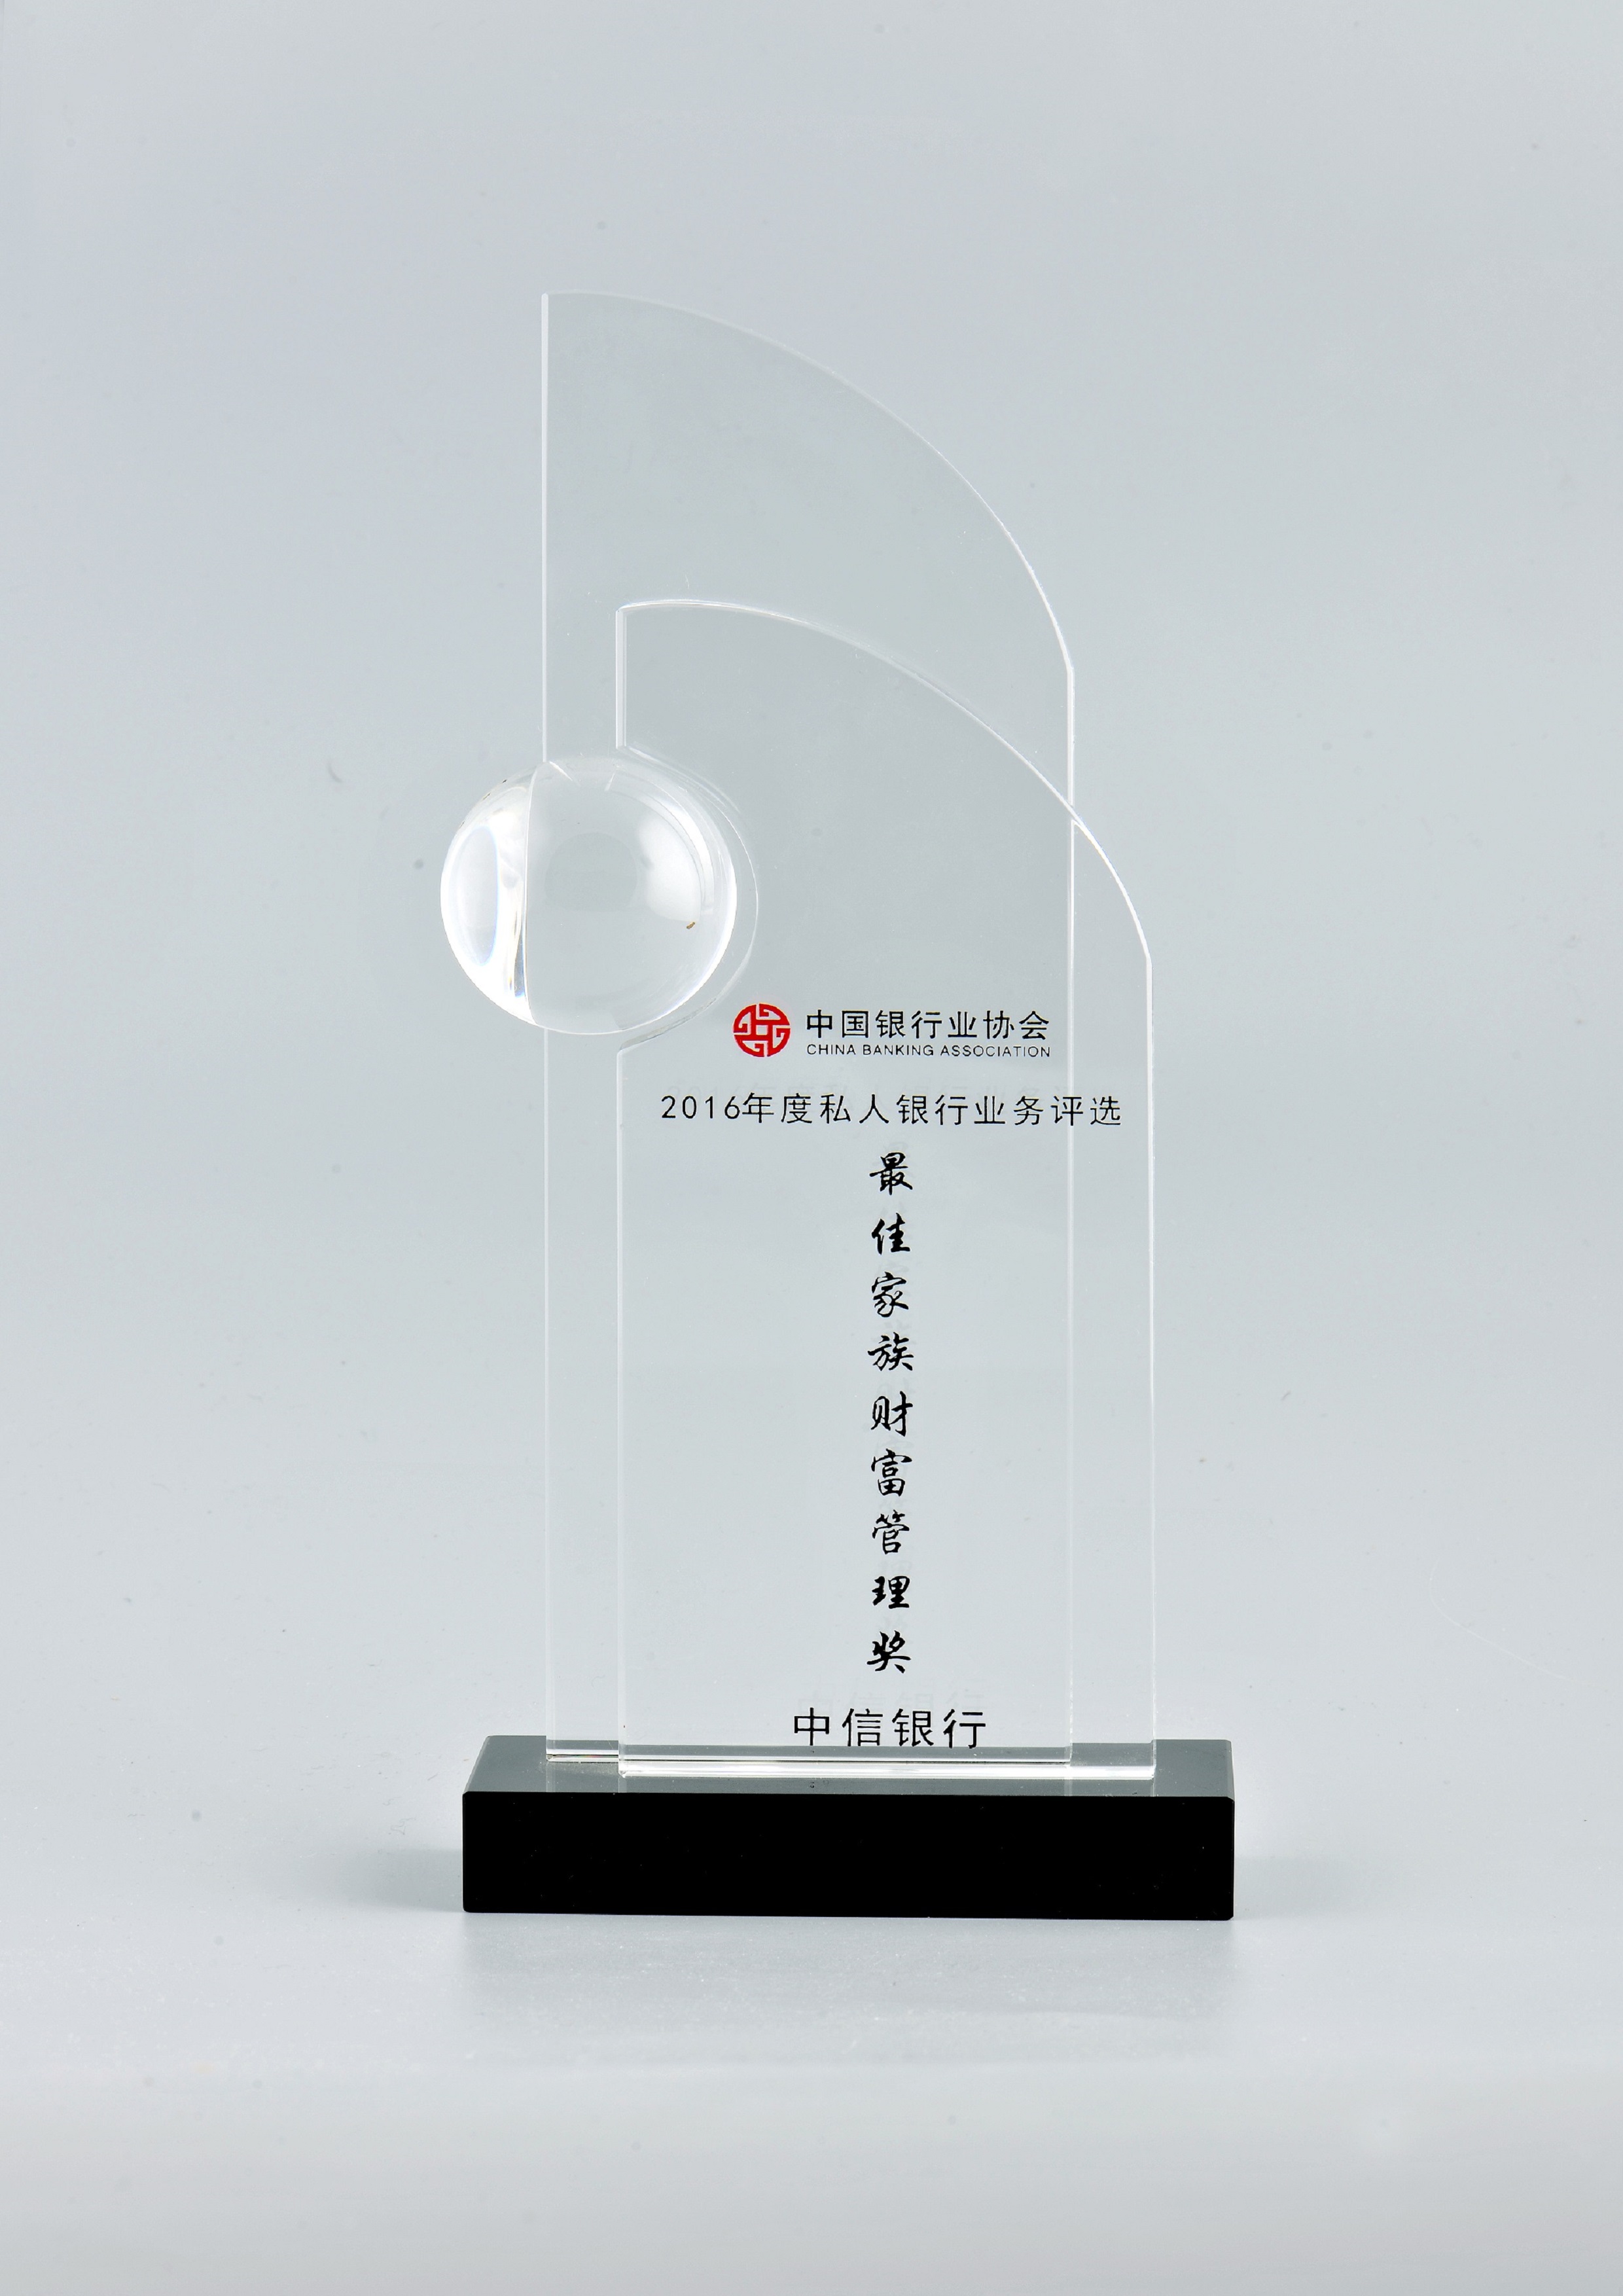 2中國最佳家族財富管理獎2016年度.JPG